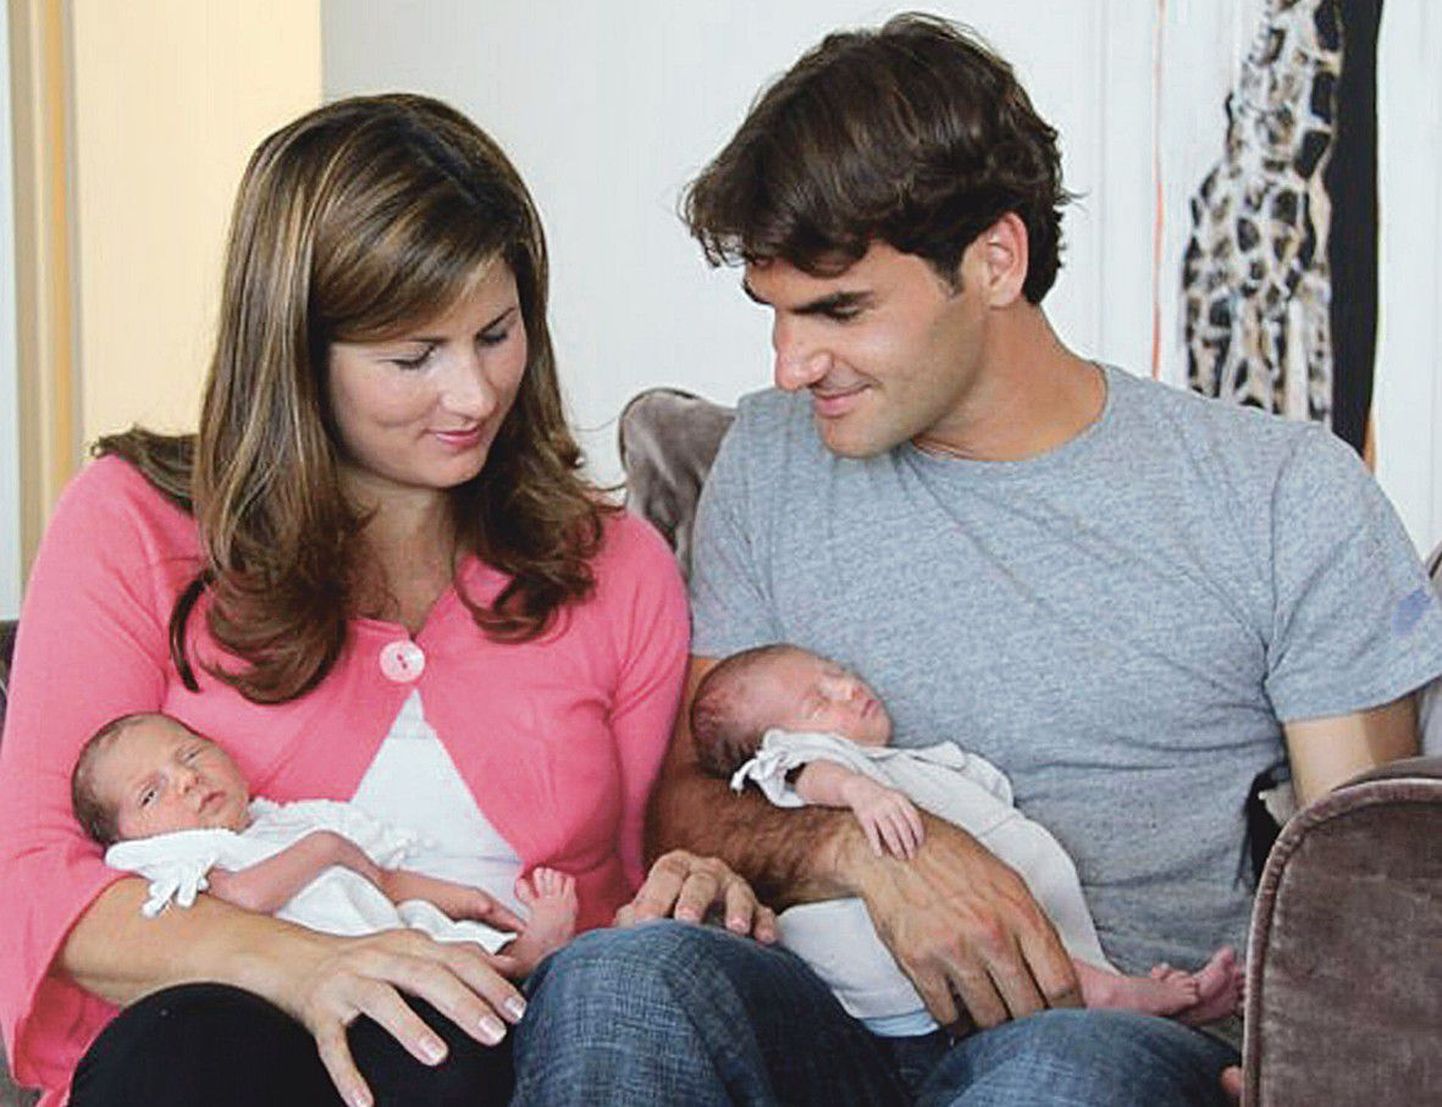 Роджер Федерер сам показал миру своих дочерей-близнецов Милы Розы и Шарлин     Ривы, разместив семейную фотографию на портале Facebook.